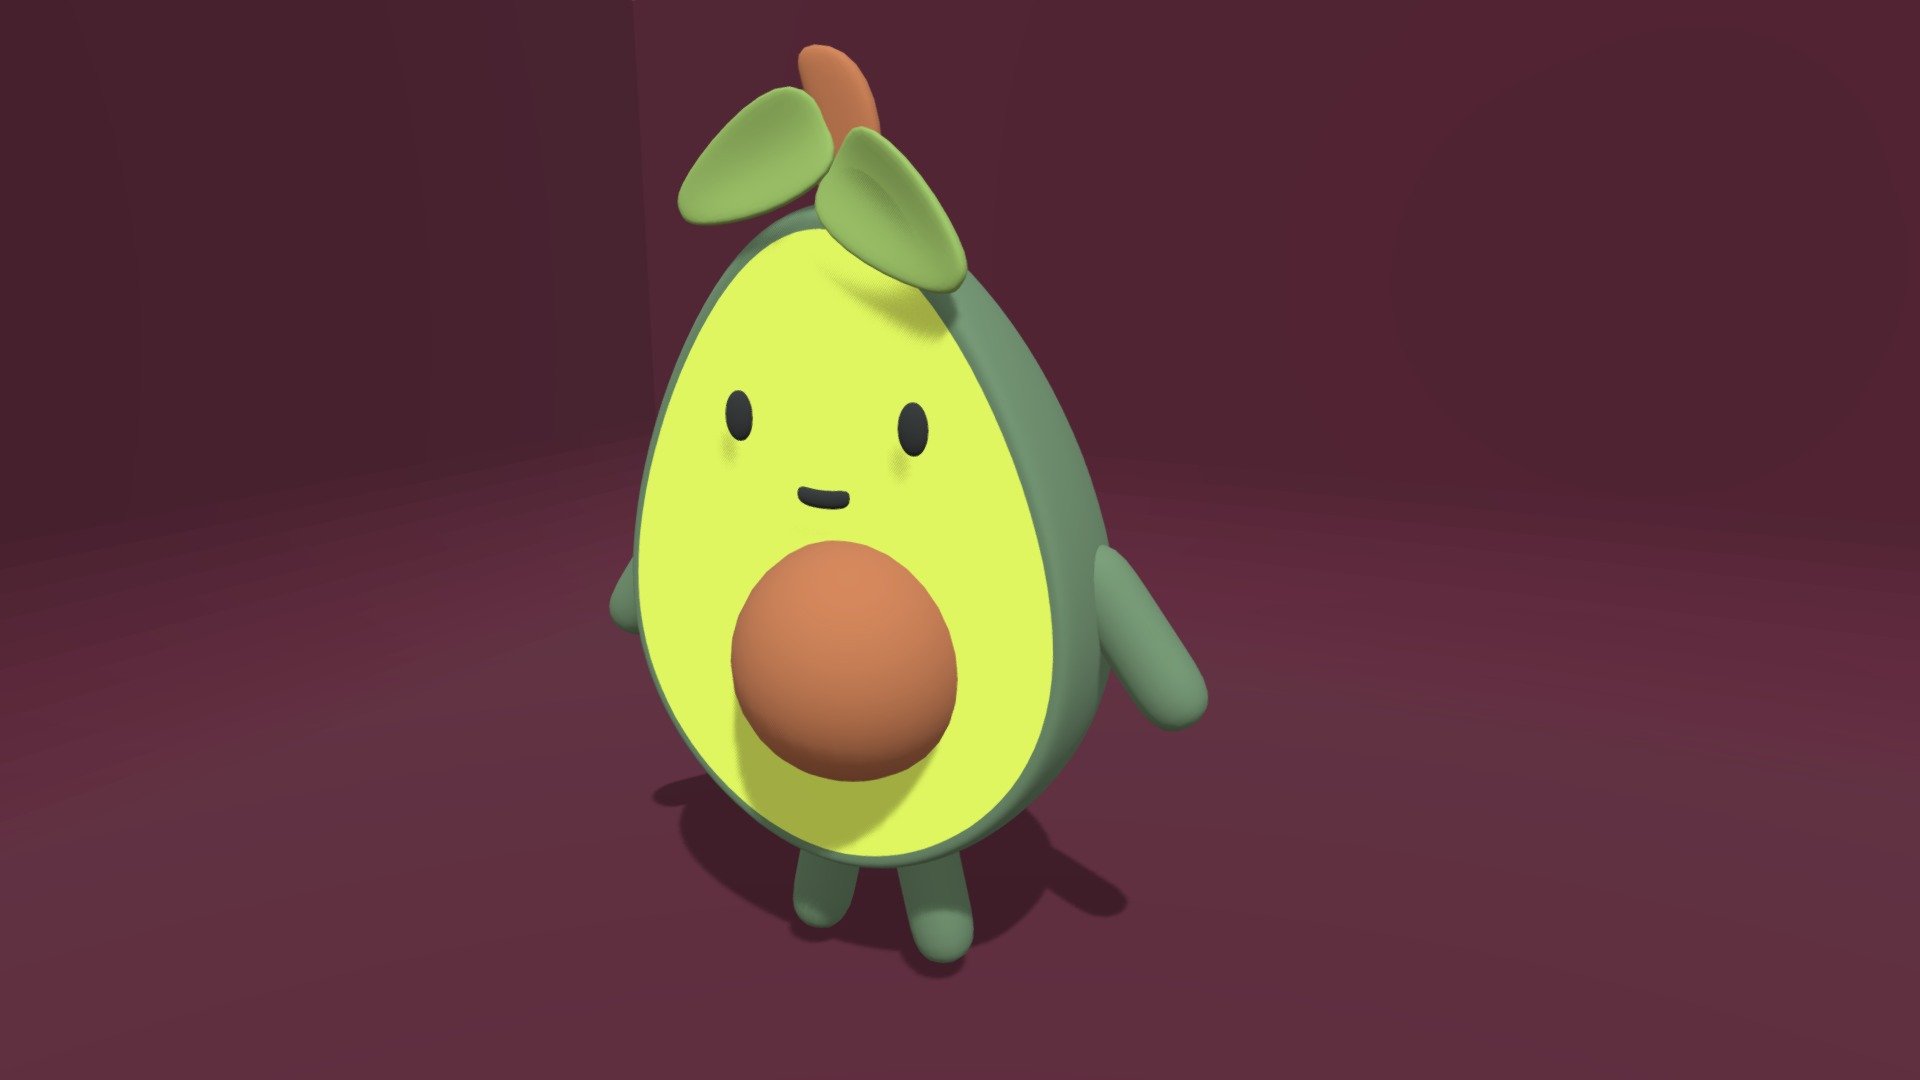 Cute Avocado
Download :
https://amaraha.itch.io/cute-avocado

See More :
https://amaraha.itch.io/ - Cute Avocado - 3D model by amaraha 3d model